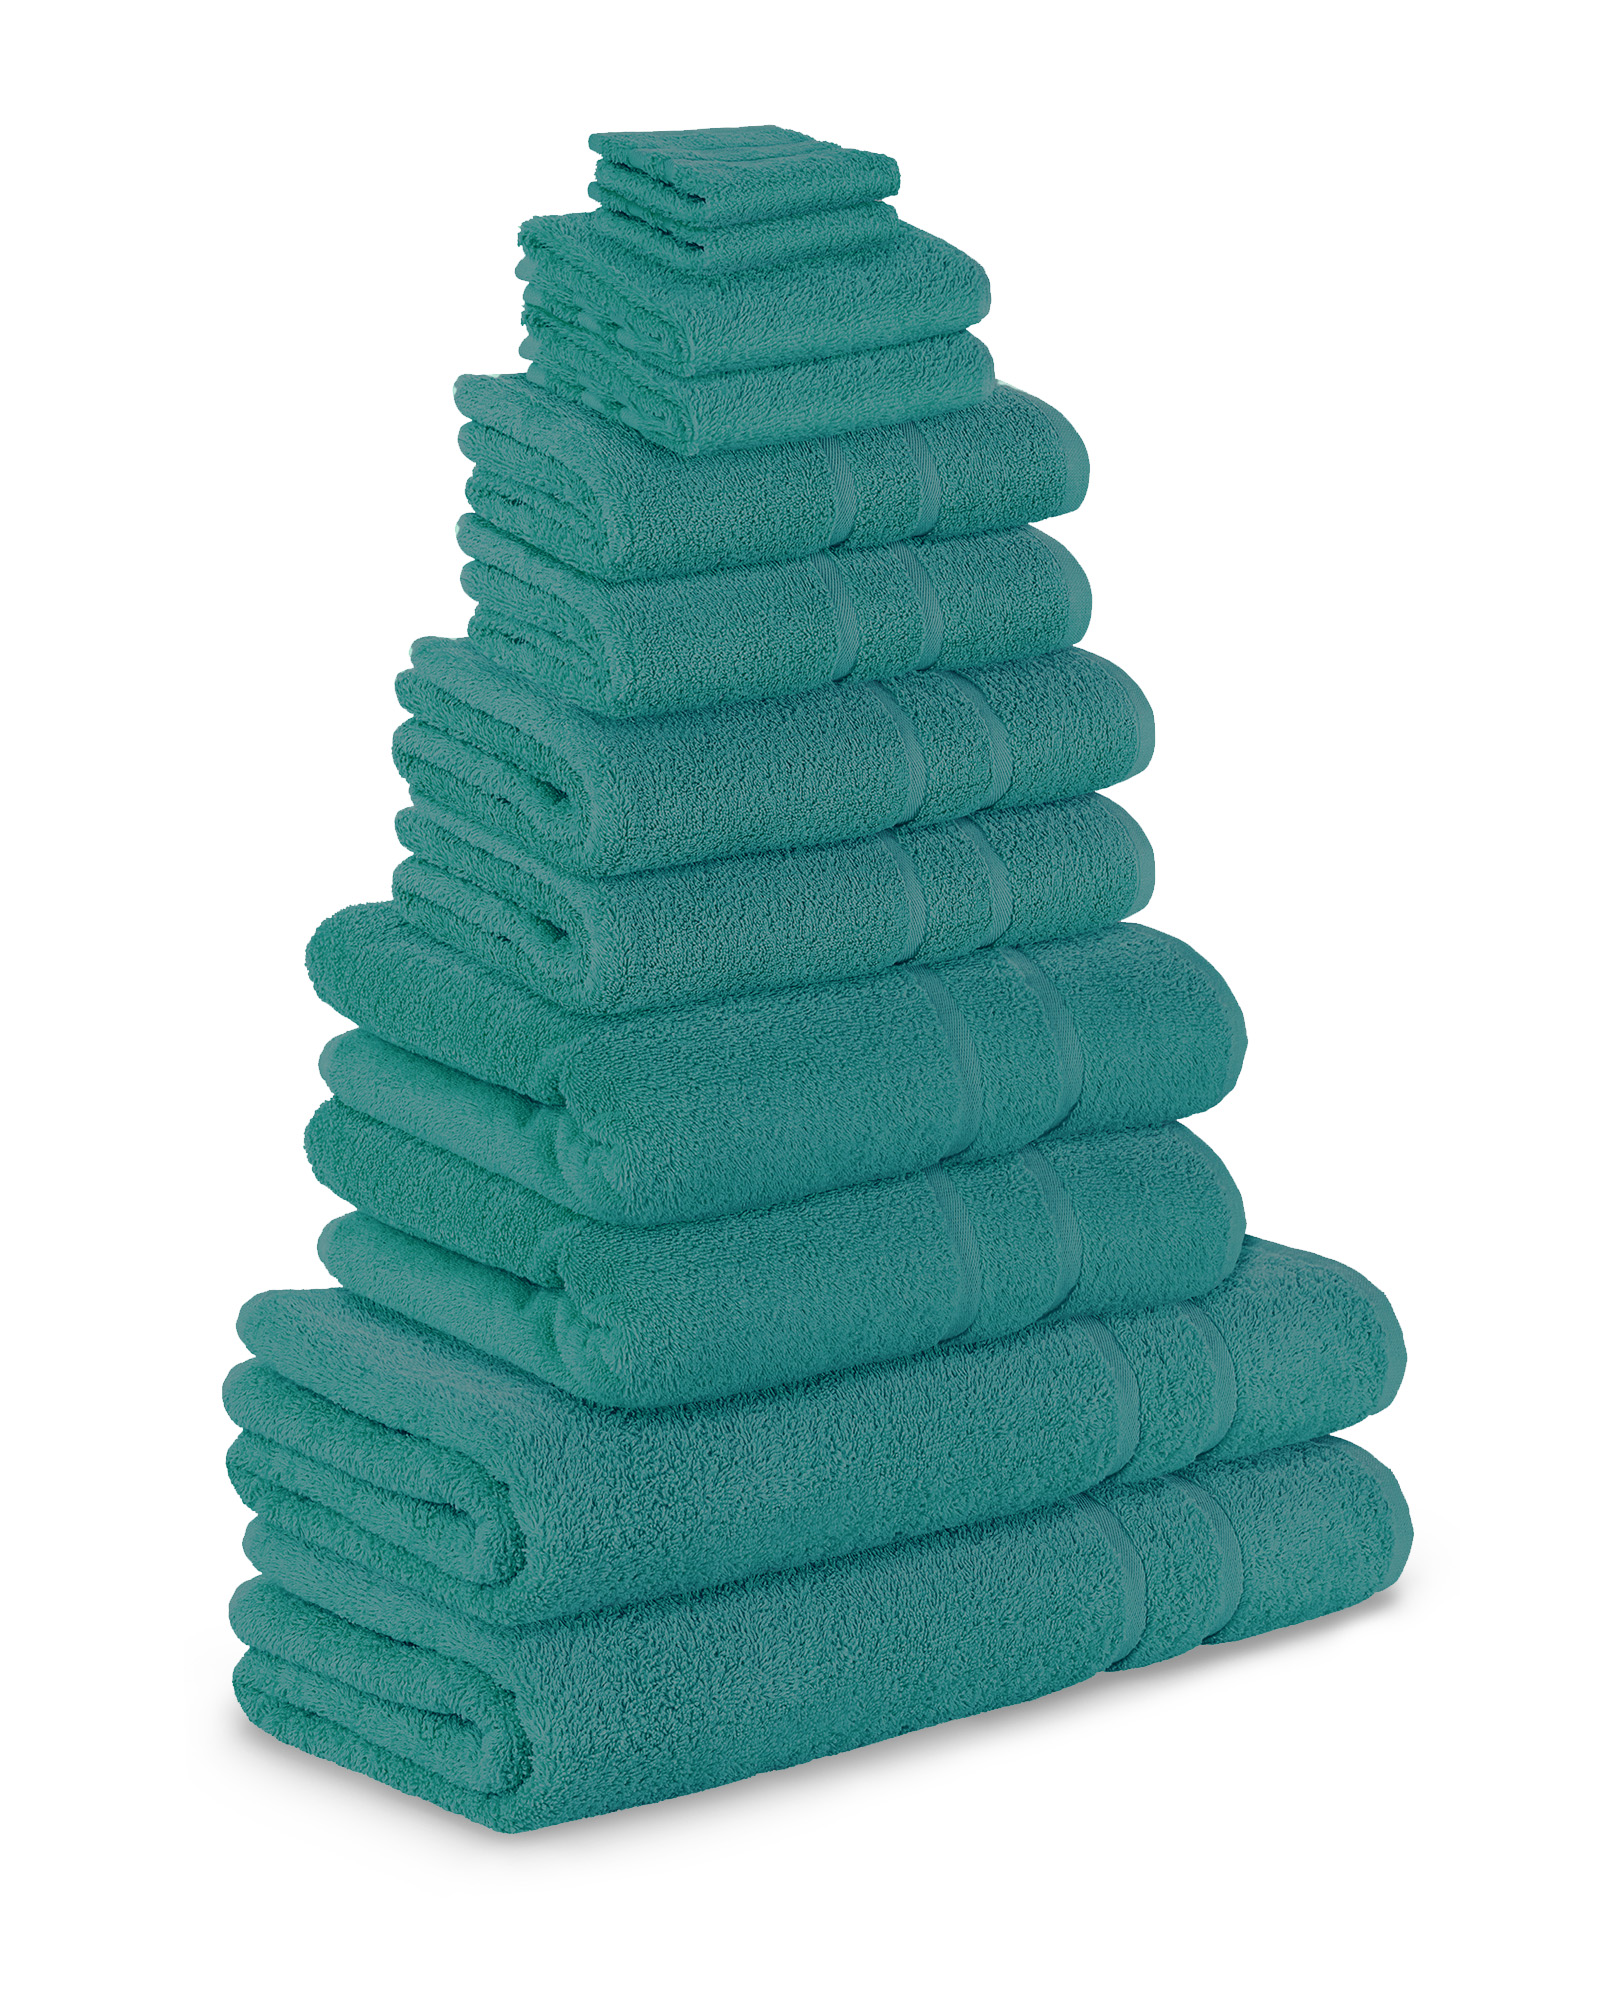 Auto Waschen Handtuch High-dichte Korallen Fleece 500-800g/㎡ Saugfähigen Auto  Wischer doppelseitige verdickt Multifunktionale Reinigung Handtücher -  AliExpress